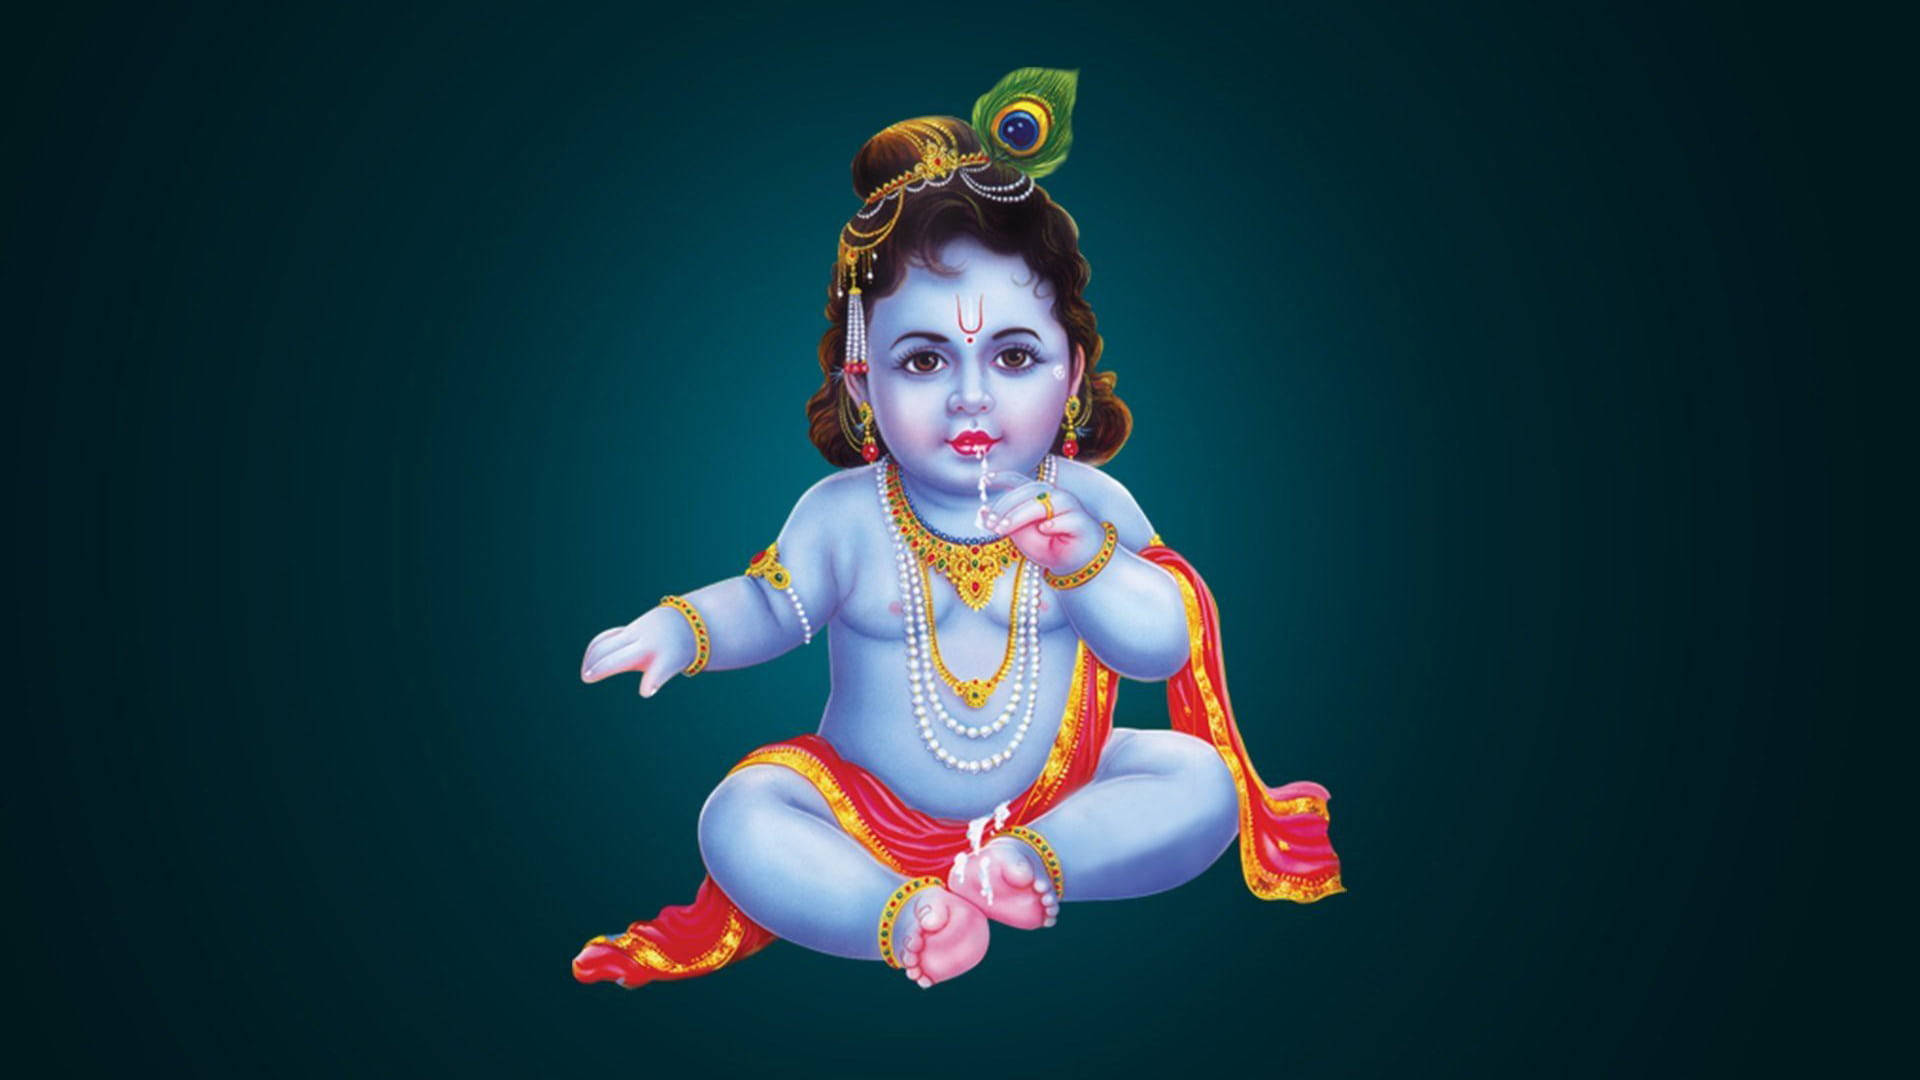 Blue Child Hindu God Krishna Wallpaper